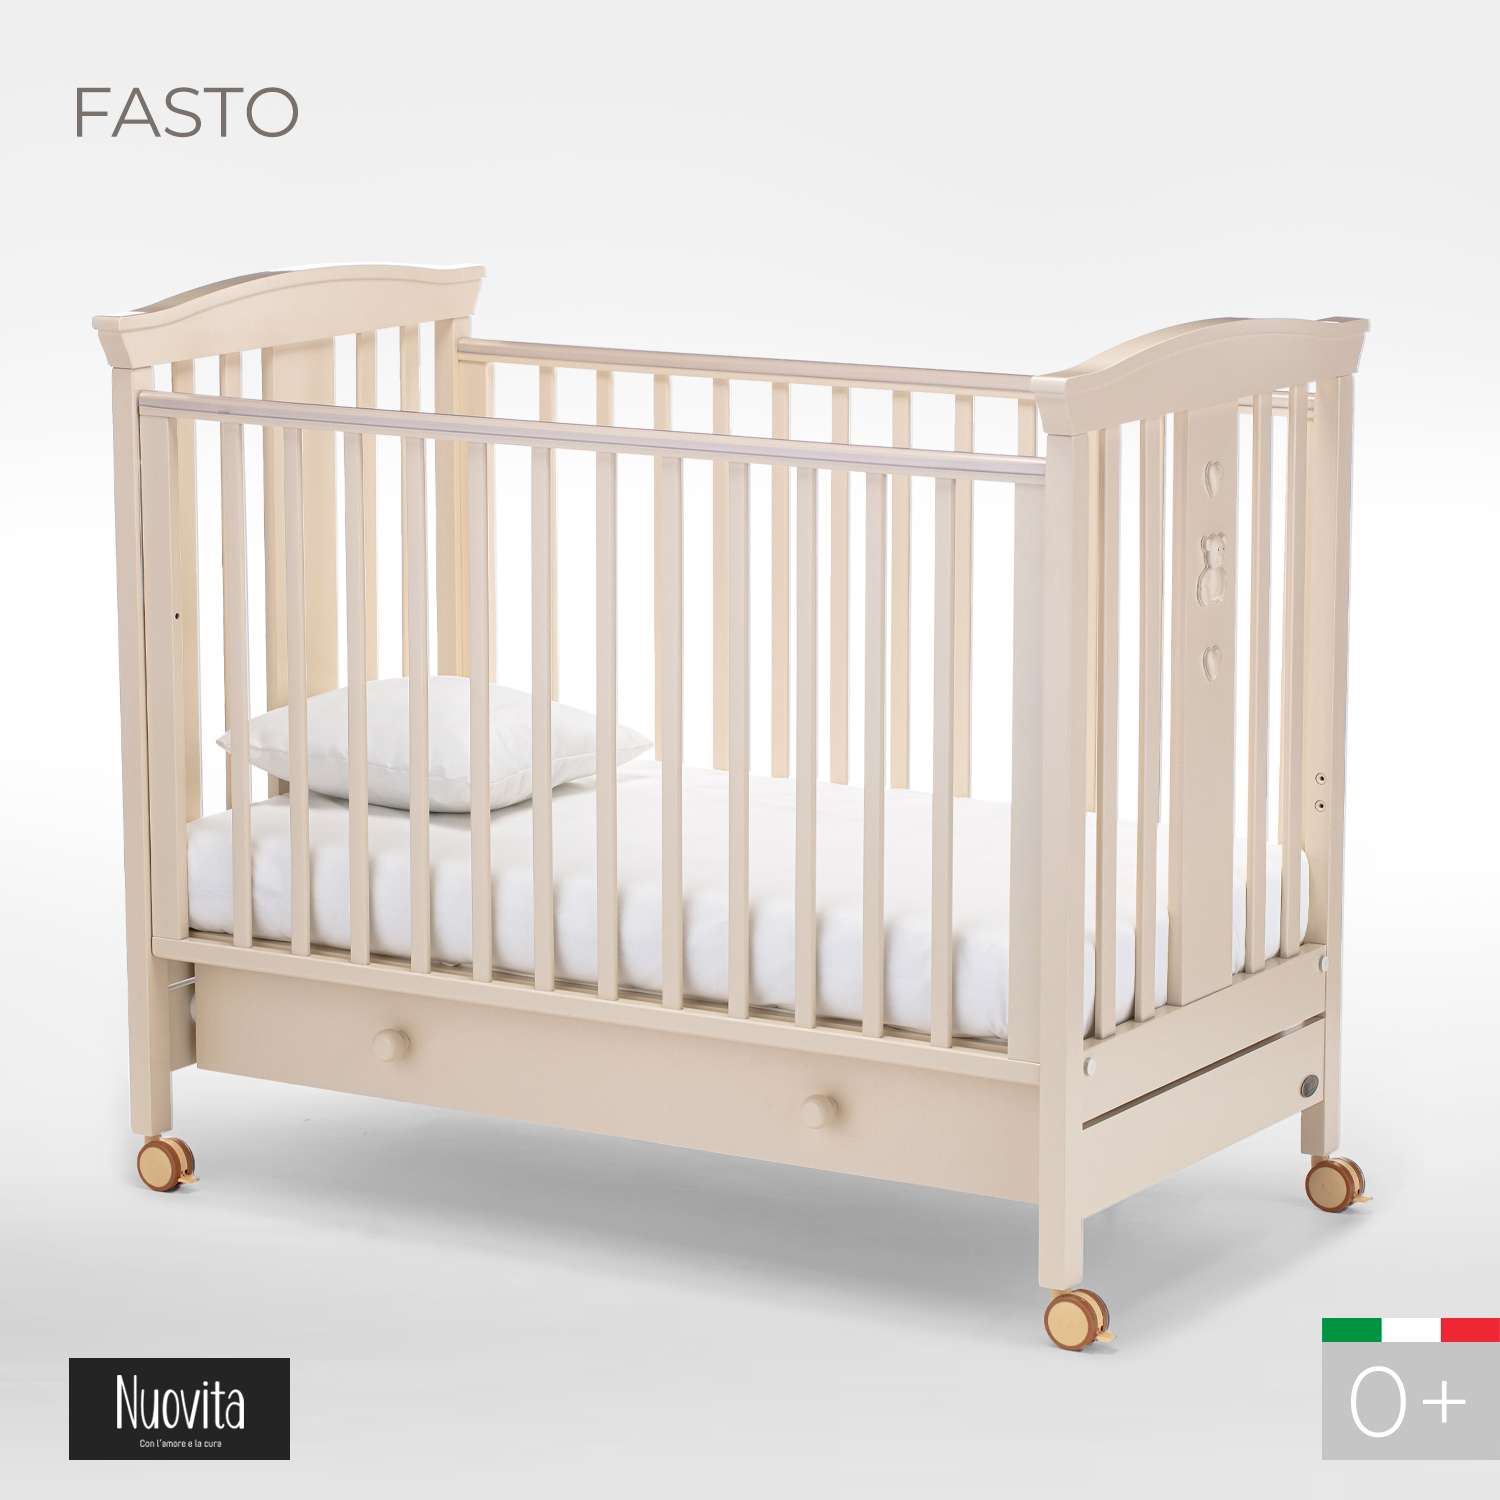 Детская кроватка Nuovita Fasto прямоугольная, без маятника (слоновая кость) - фото 2